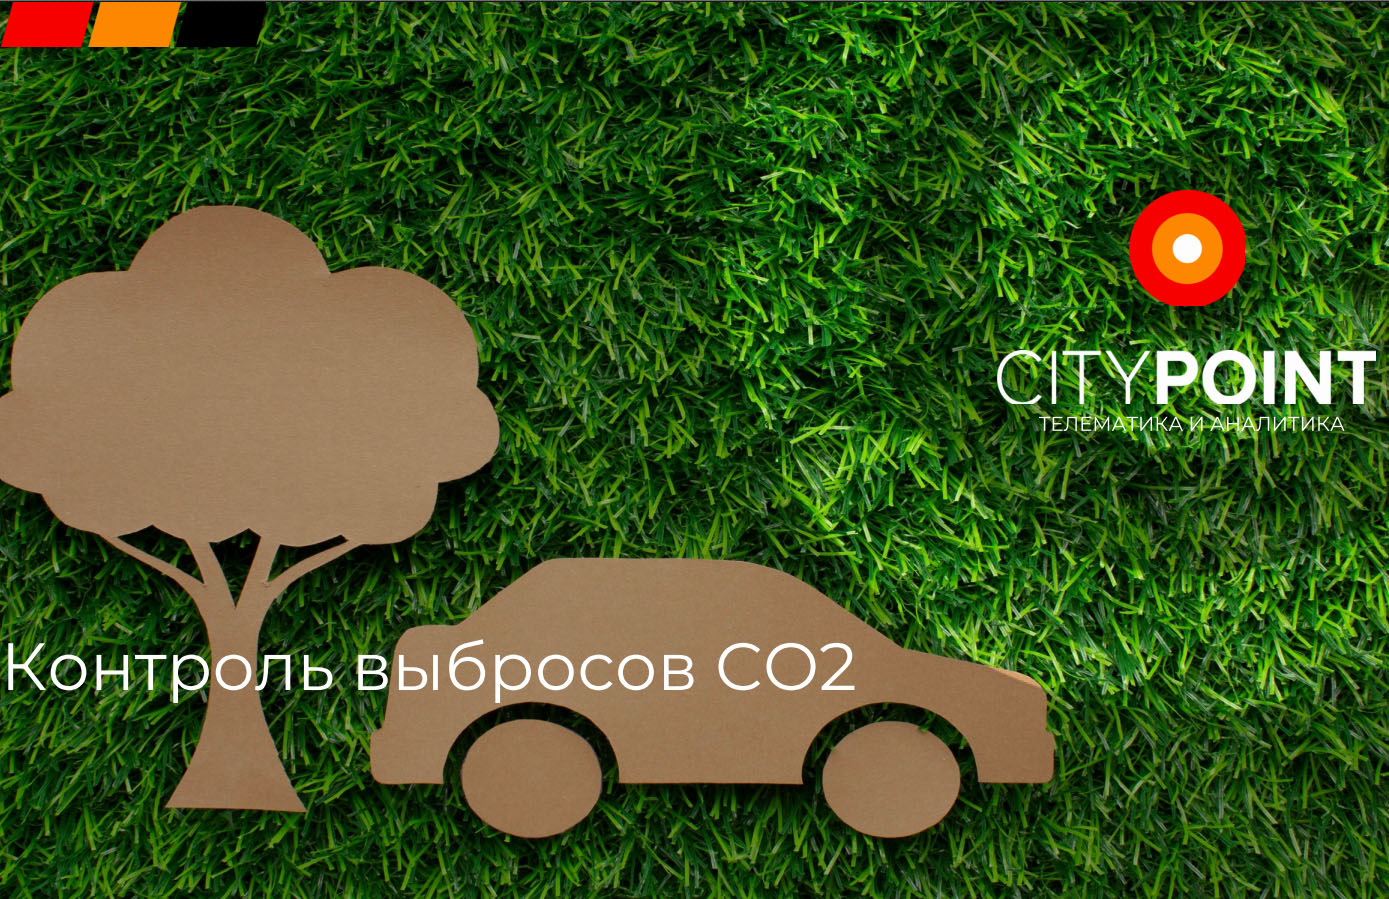 Как система СитиПоинт помогает сокращать выбросы CO2 от транспорта